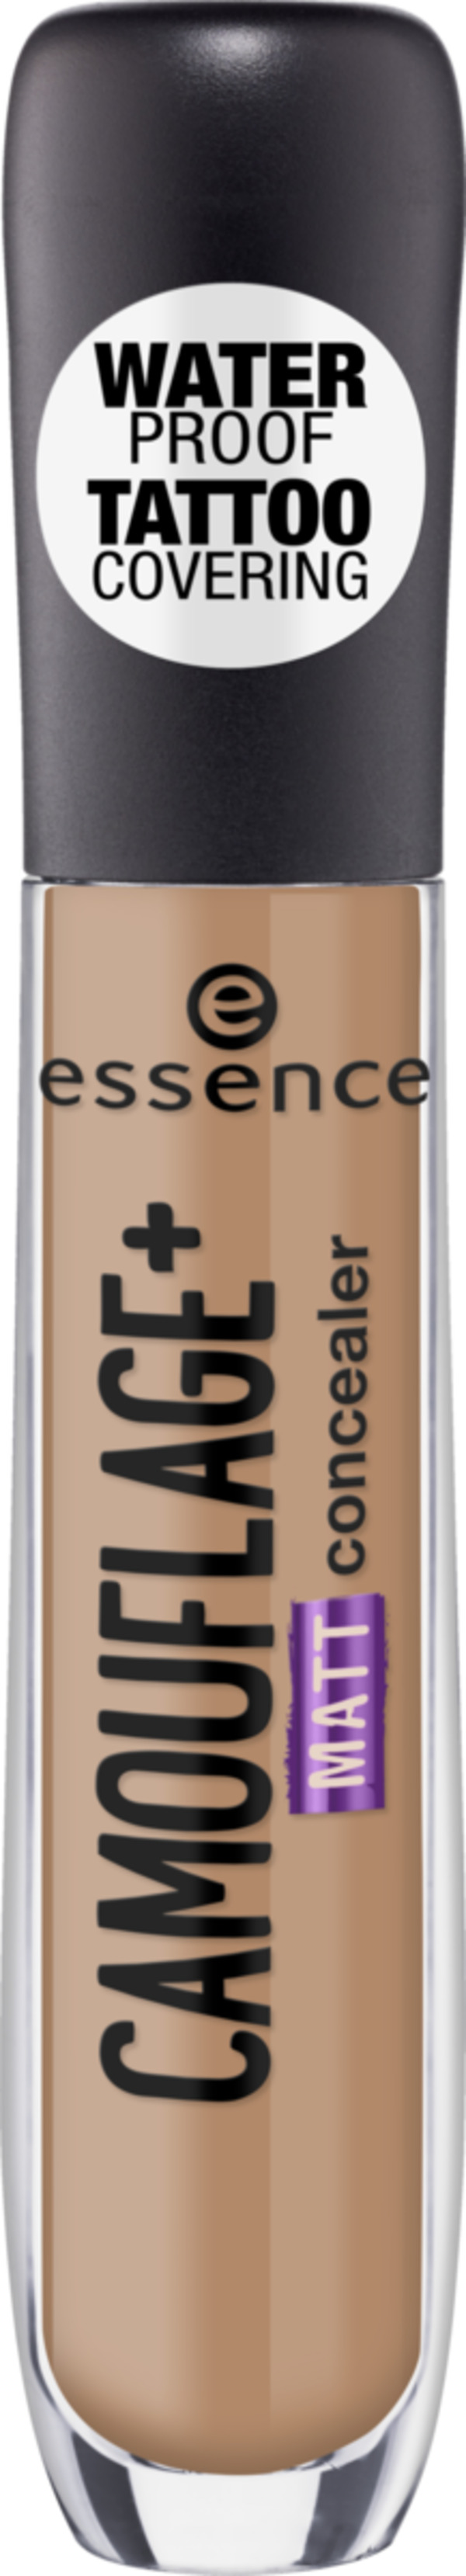 Bild 1 von essence camouflage+ matt concealer 70 dark caramel